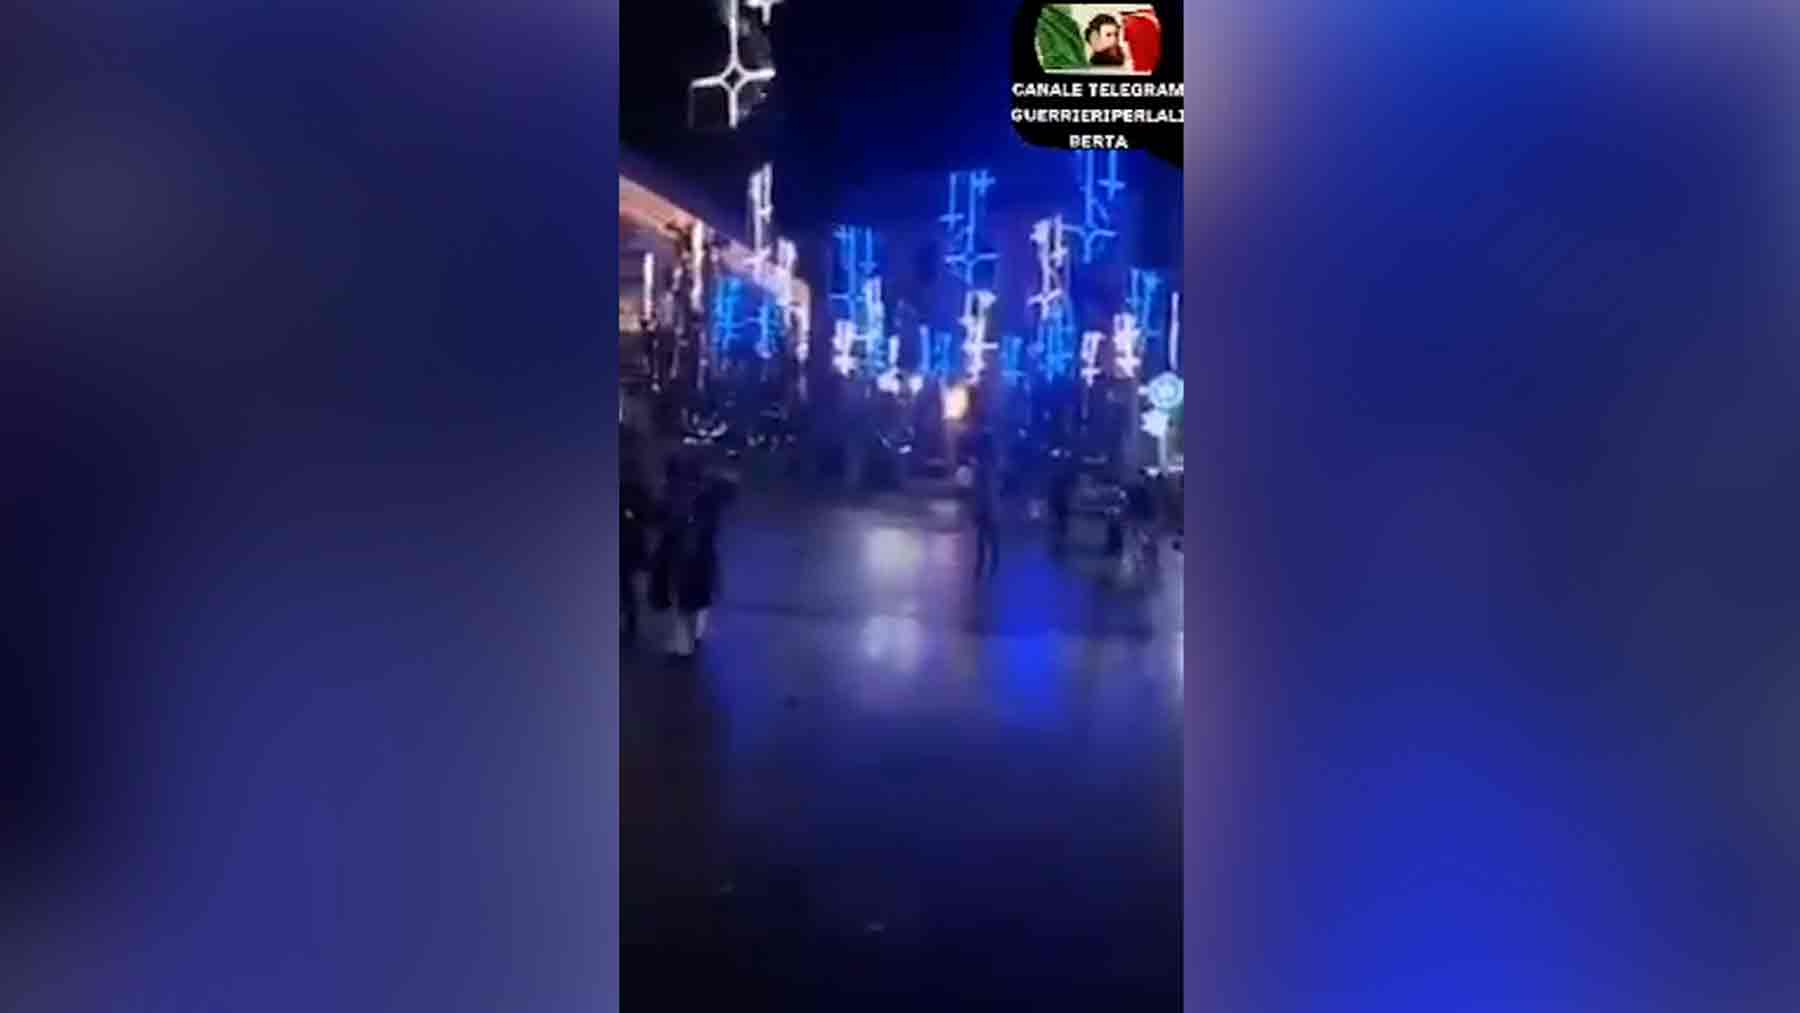 Polémica en Granada por las «cruces invertidas» y luces «satánicas» en su iluminación navideña.